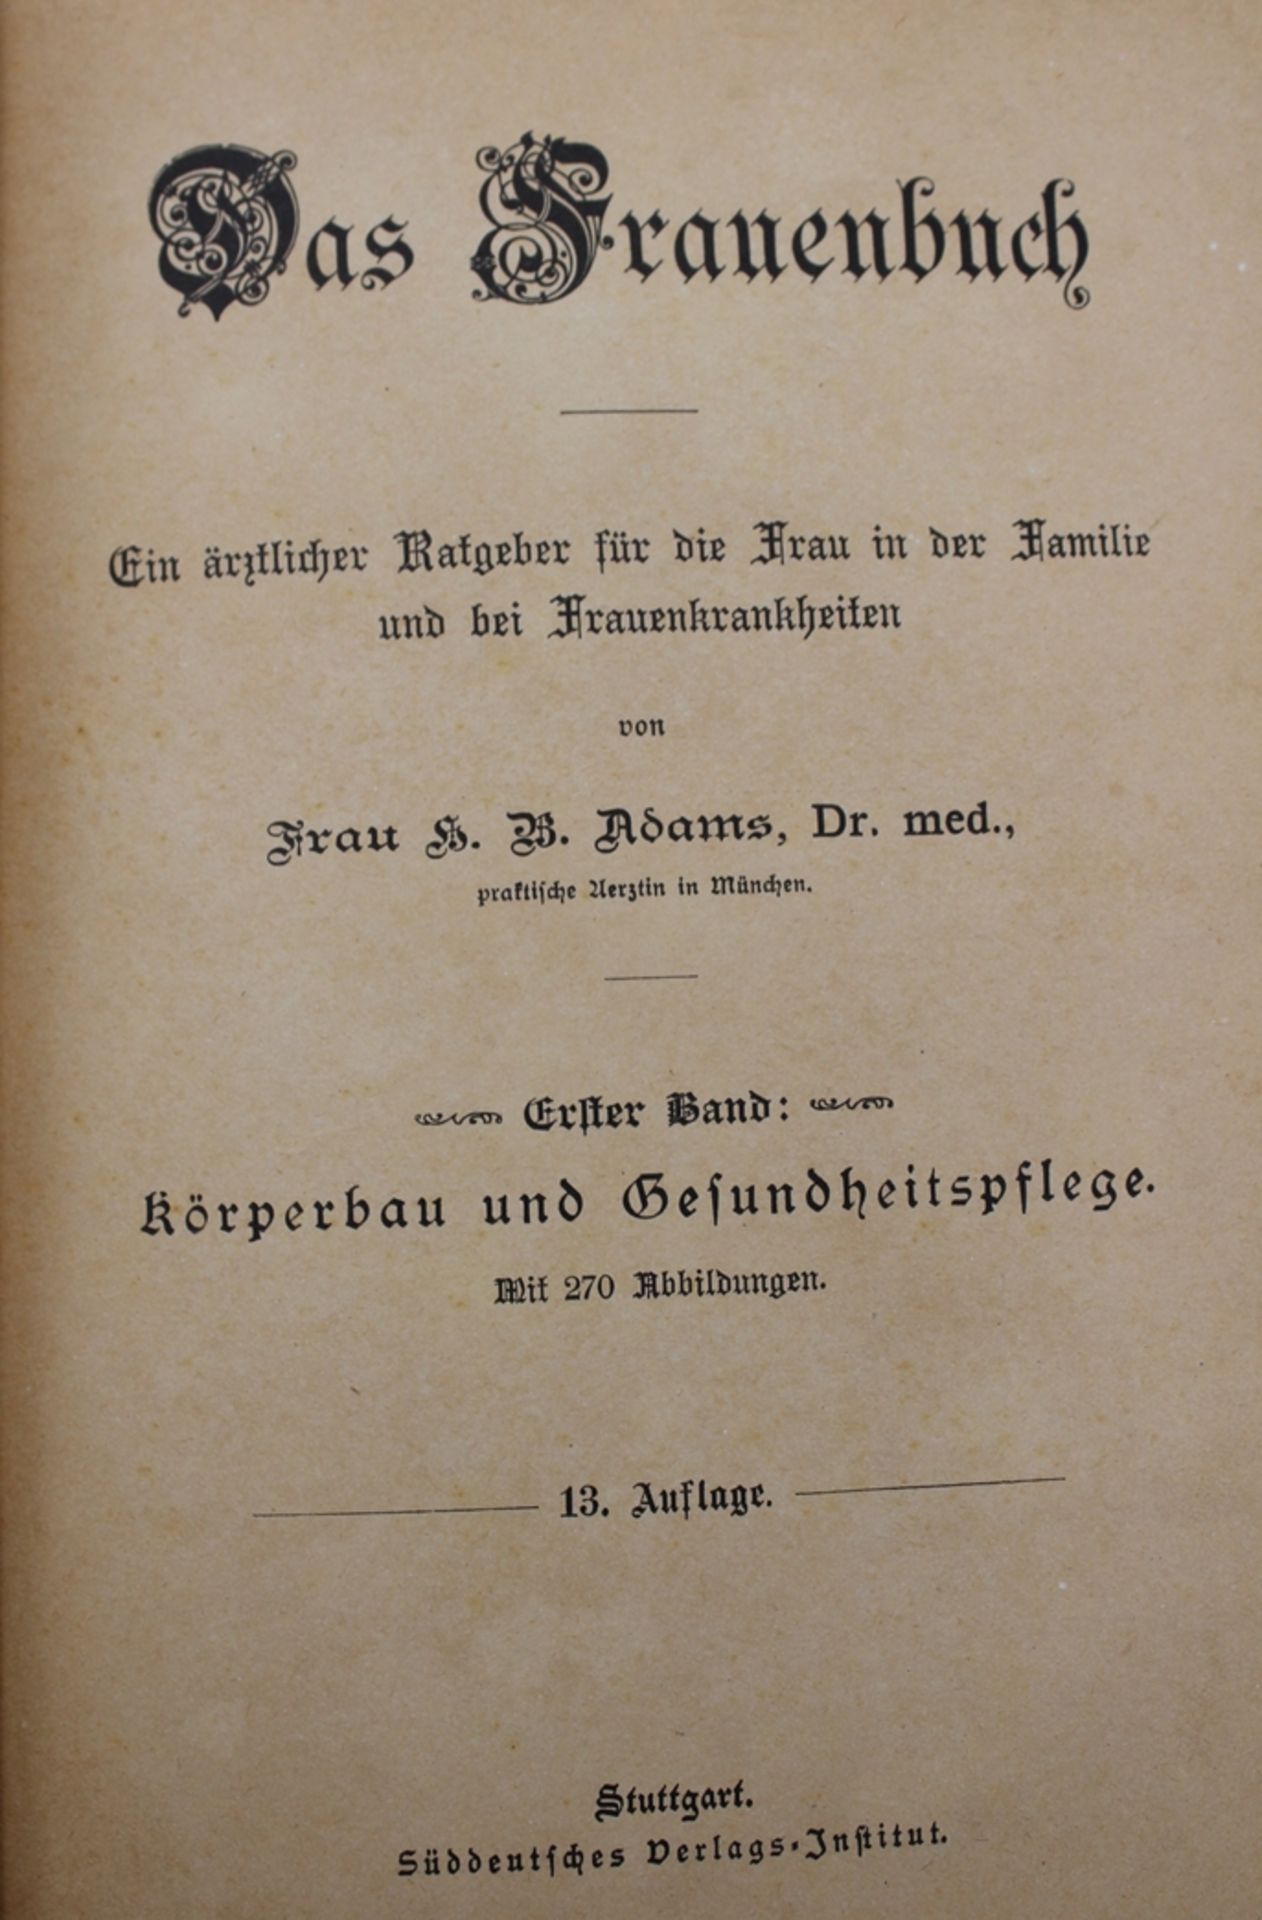 Dr, med. Adams, Das Frauenbuch - Ein ärztlicher Ratgeber für die Frau...., 1. Band, Stuttgartum 191 - Bild 2 aus 4